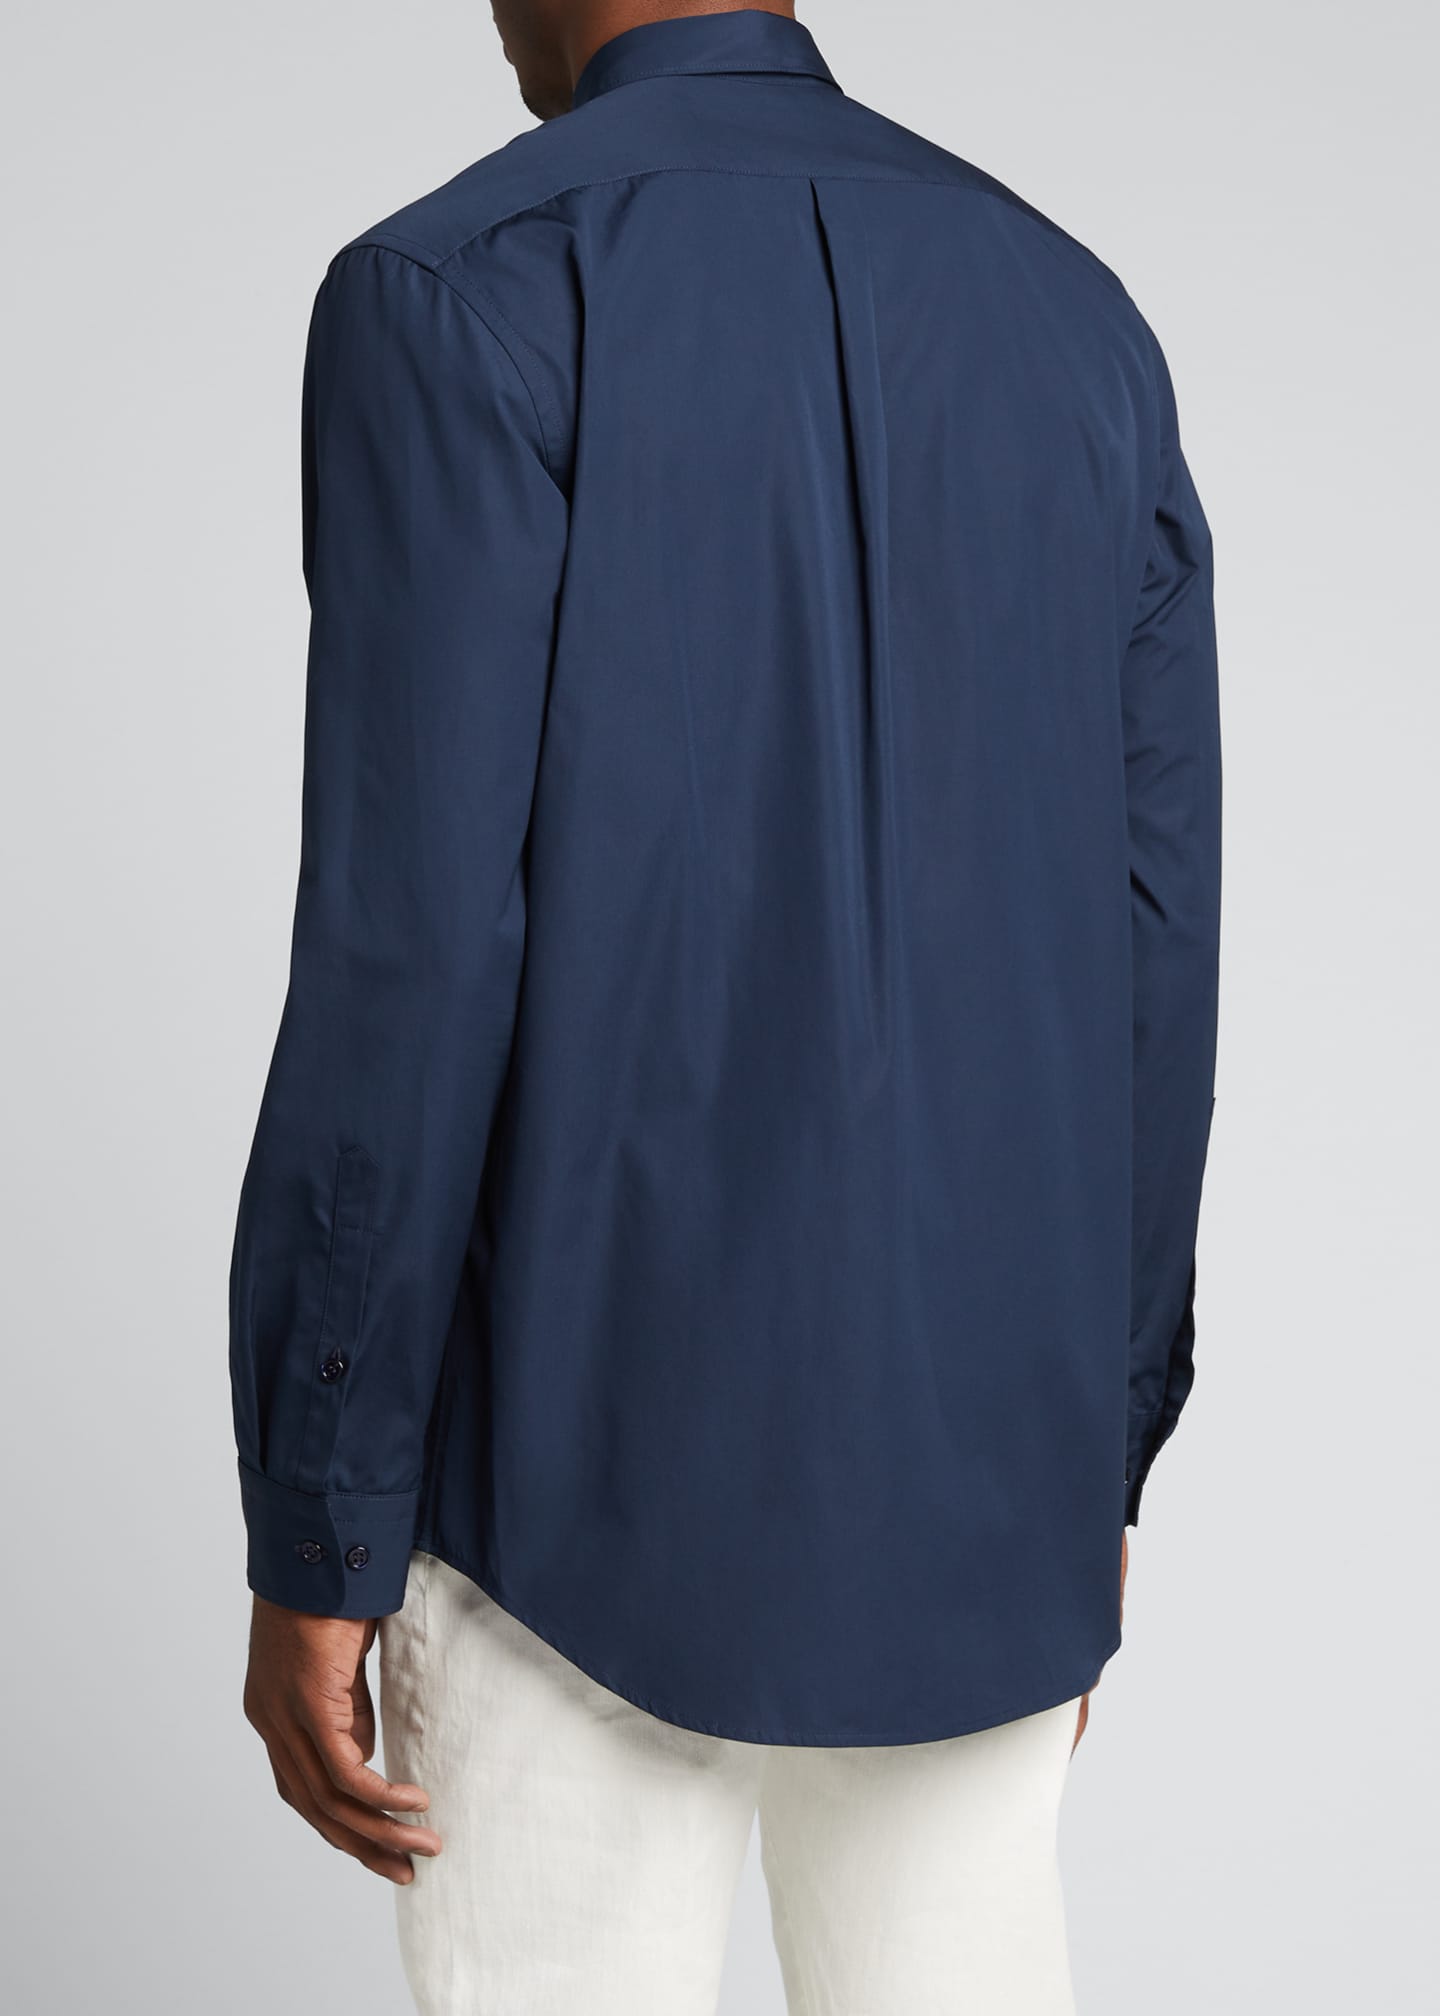 Gabriela Hearst Men's Quevedo Point-Collar Sport Shirt - BCI Cotton ...